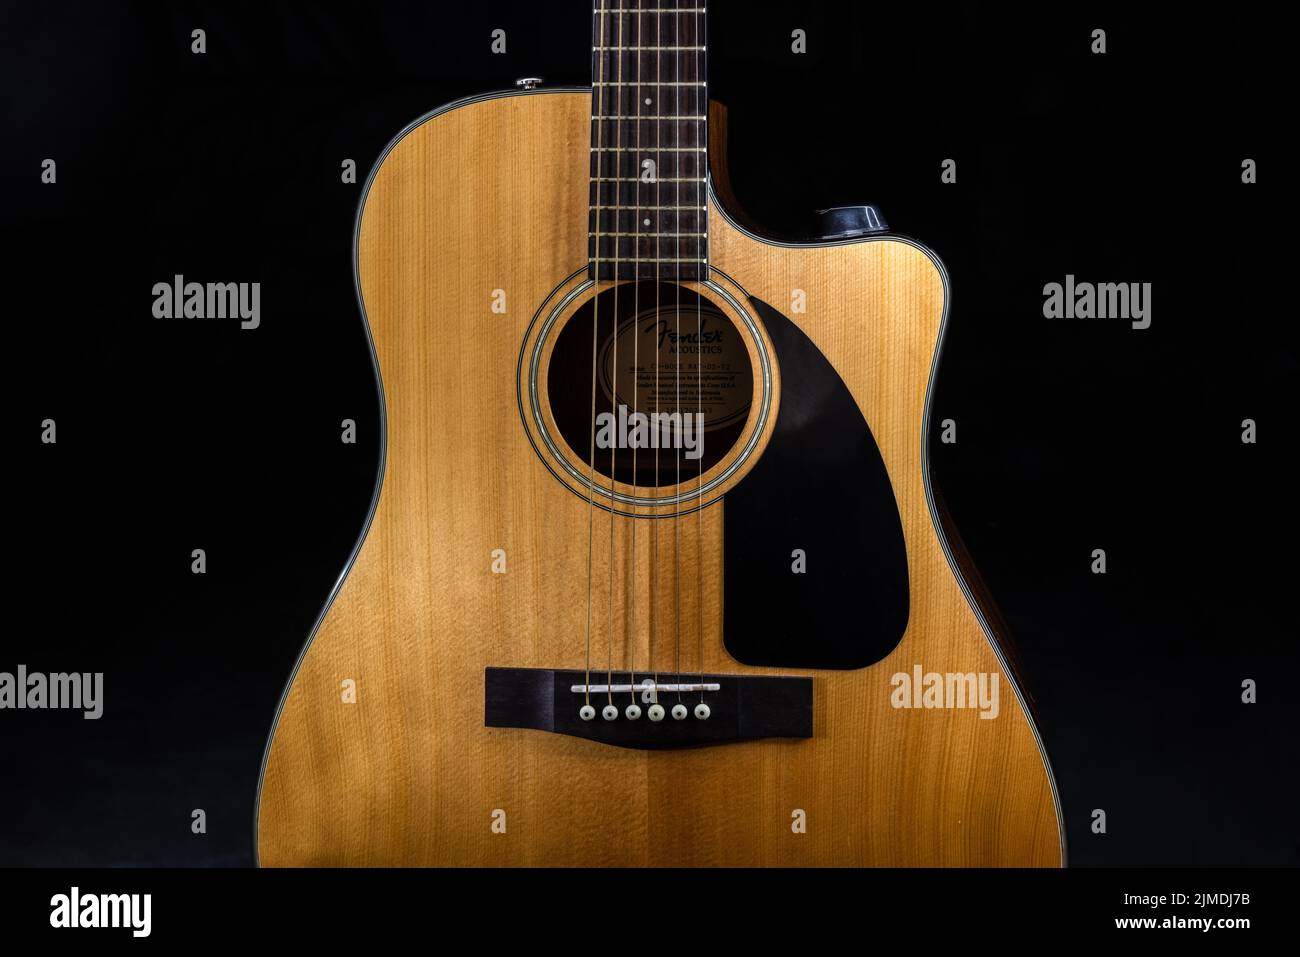 Guitare acoustique classique à six cordes Fender CD-60 avec un panneau sonore jaune et une plaque noire sur fond noir isolé Banque D'Images